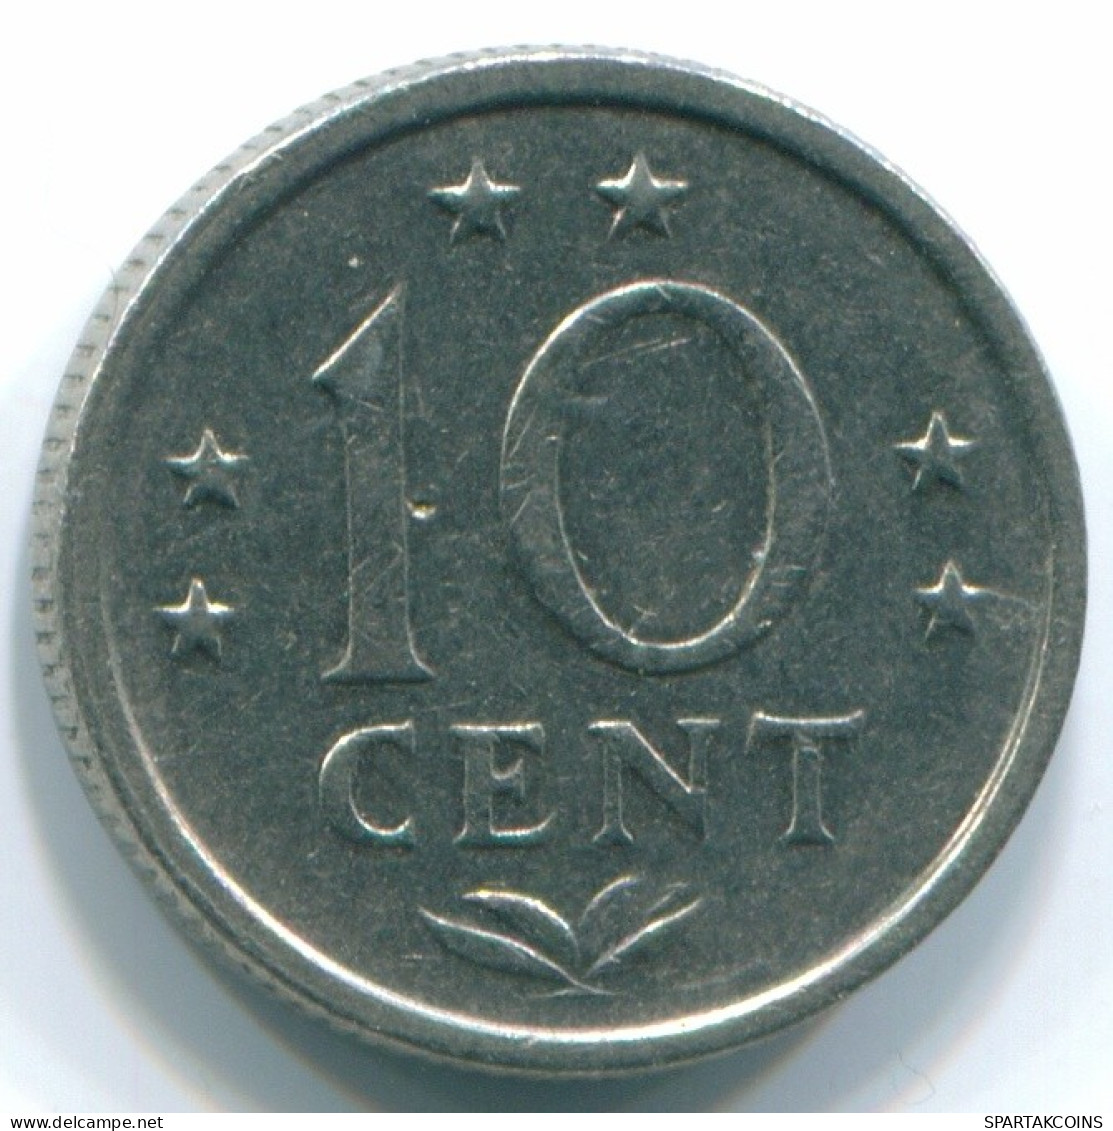 10 CENTS 1971 NETHERLANDS ANTILLES Nickel Colonial Coin #S13448.U.A - Niederländische Antillen